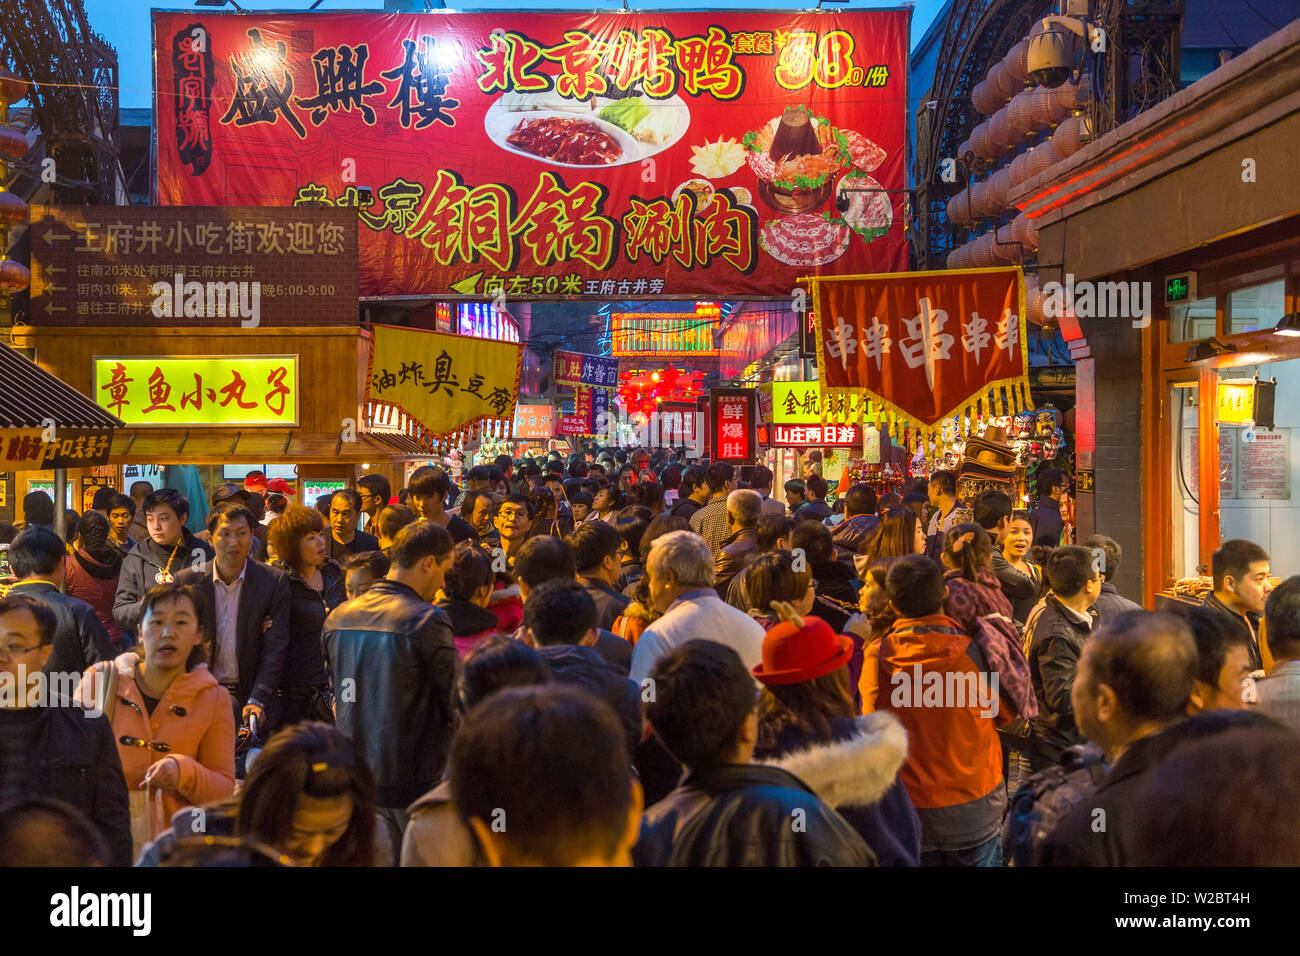 Donghuamen Night Market, Wangfujing, Beijing, China Stock Photo